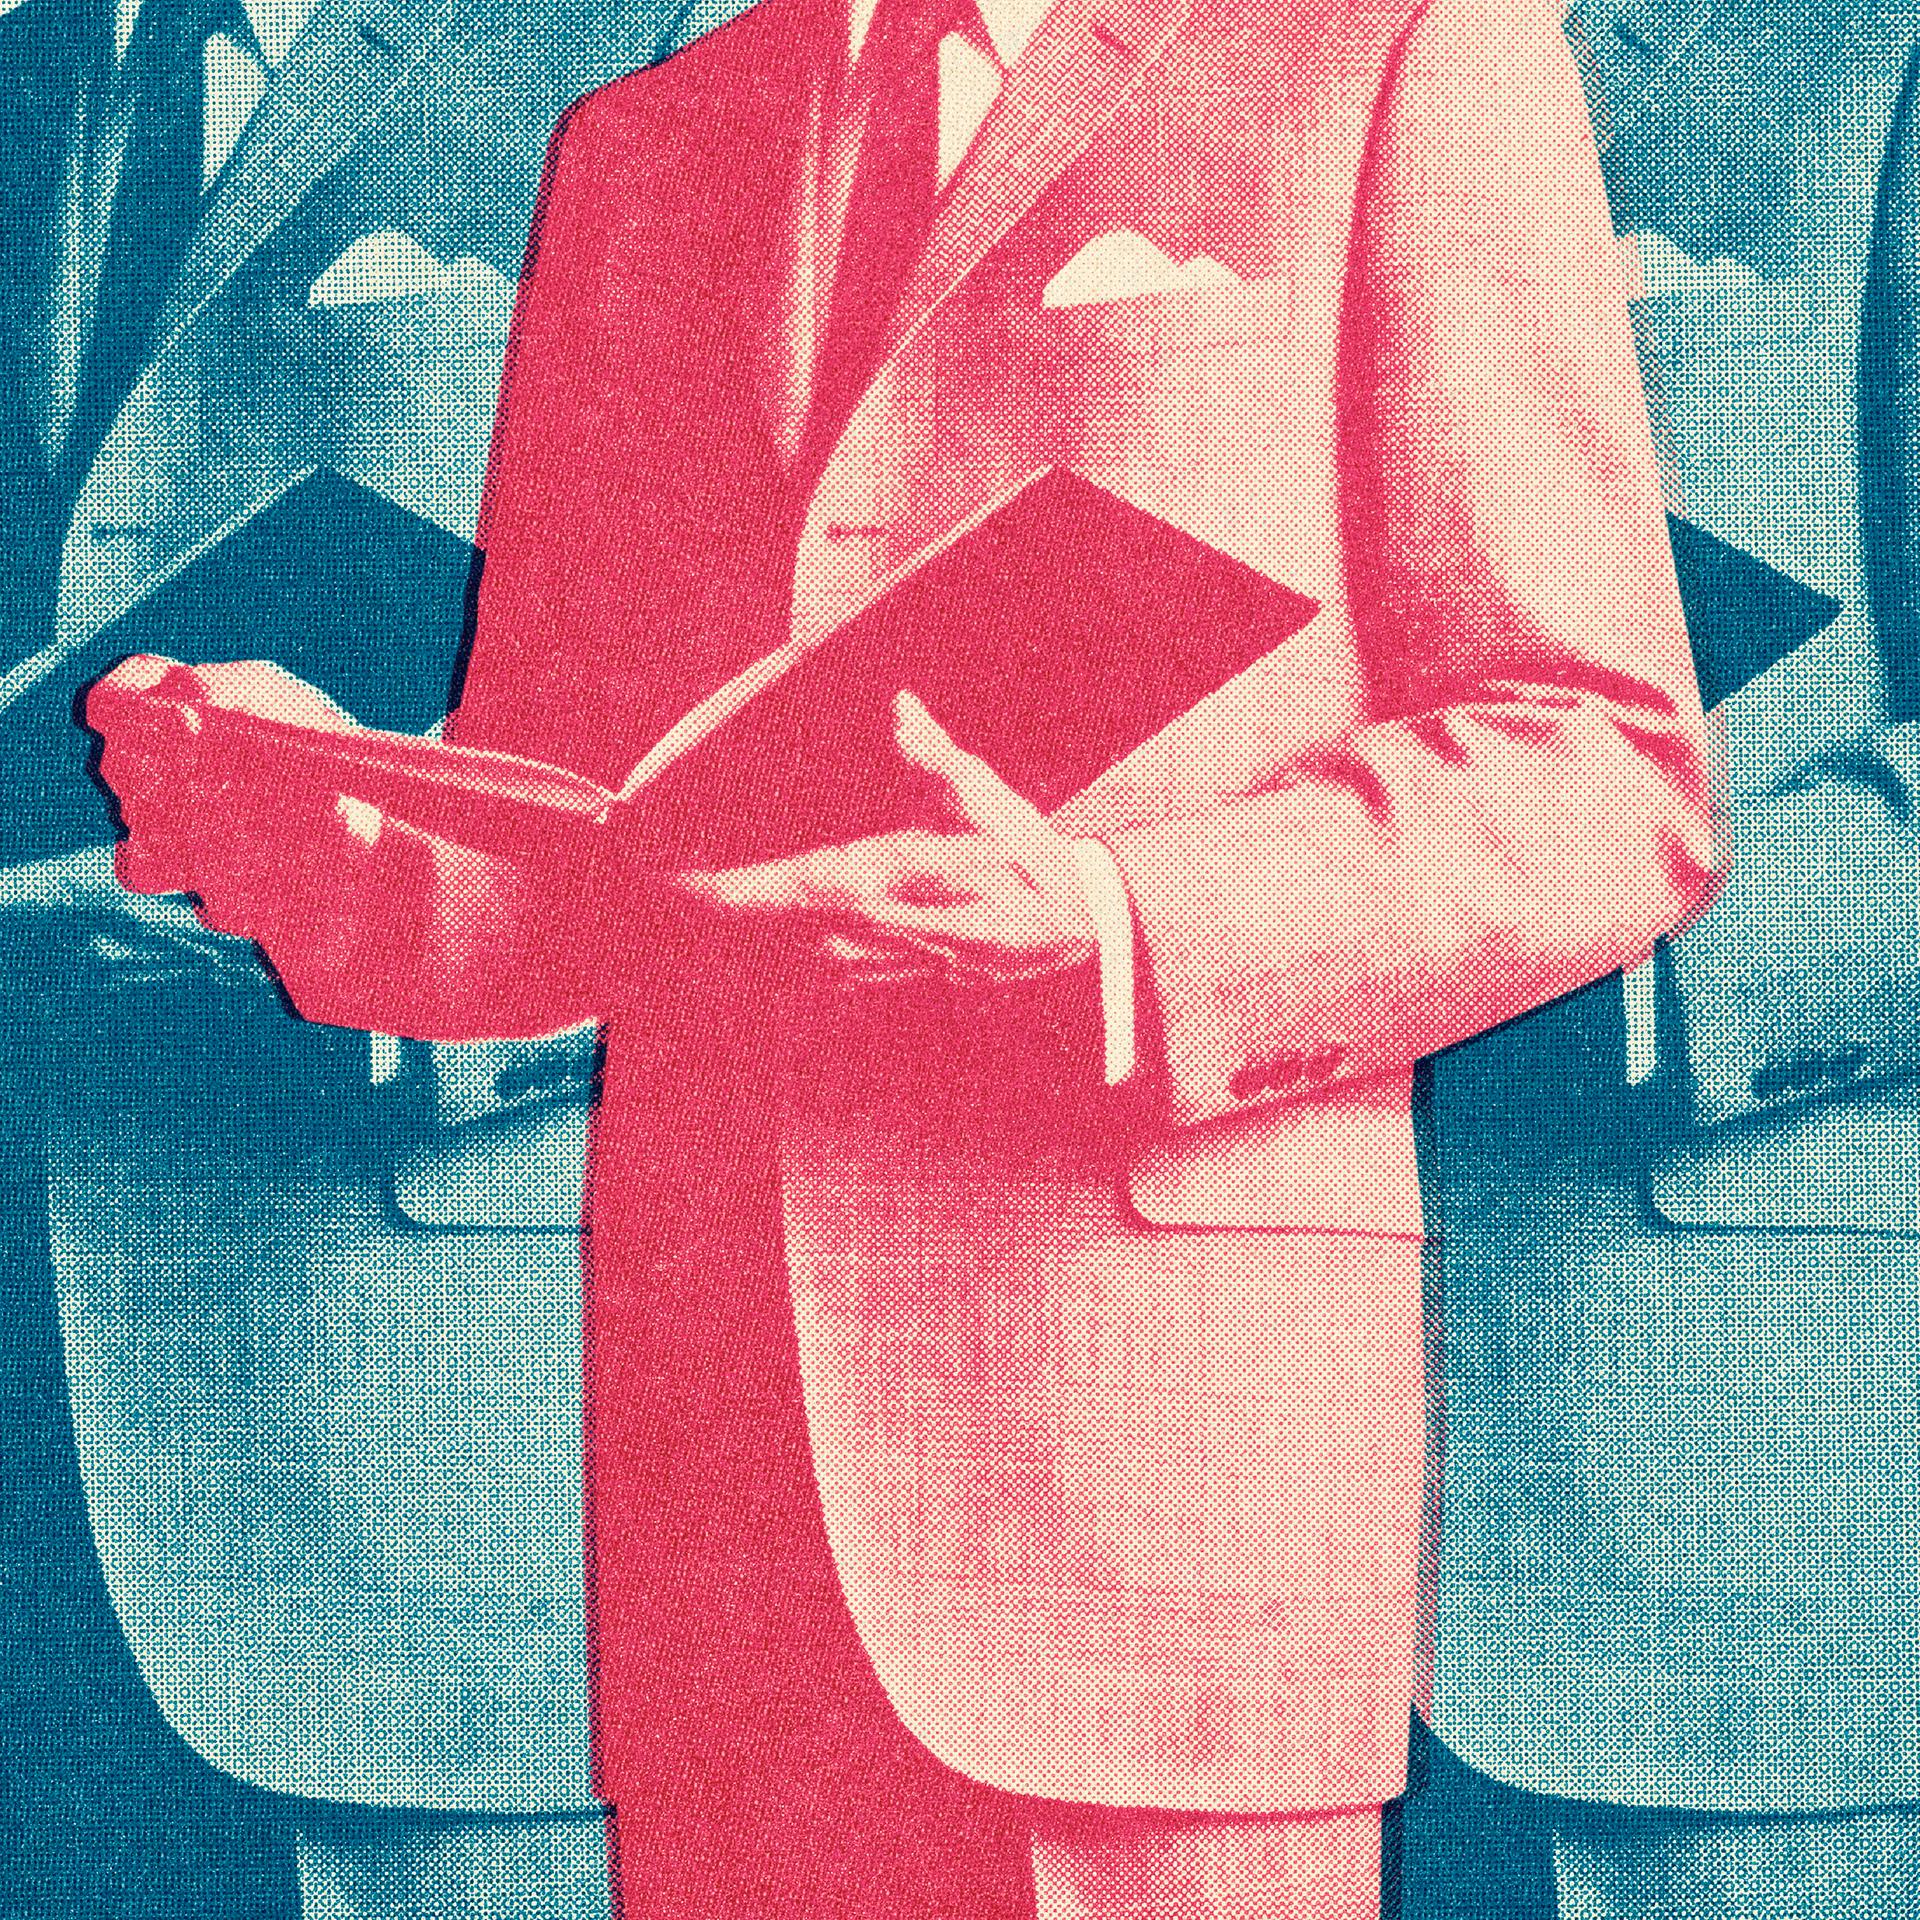 Illustration von drei identischen Männern in jeweisl blauen oder roten Anzügen, mit einem aufgeklapptem Buch in den Händen.